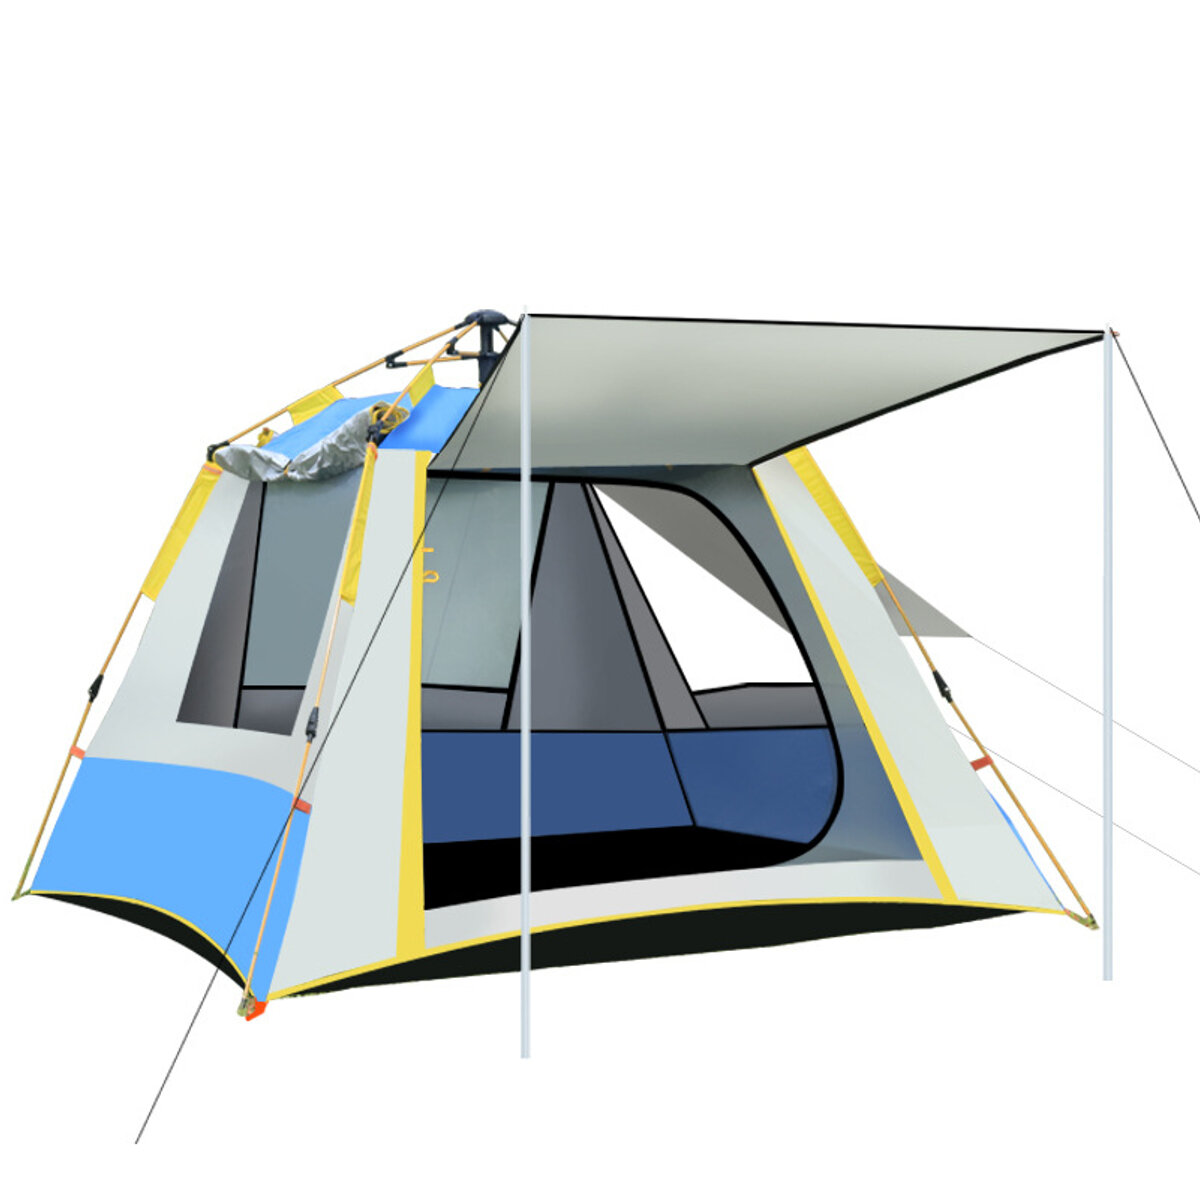 Палатка для кемпинга на 2-3 человека с автоматической установкой, 3 окнами, защитой от УФ-лучей, водонепроницаемая, ветронепроницаемая, большая семейная палатка для отдыха на природе под открытым небом.